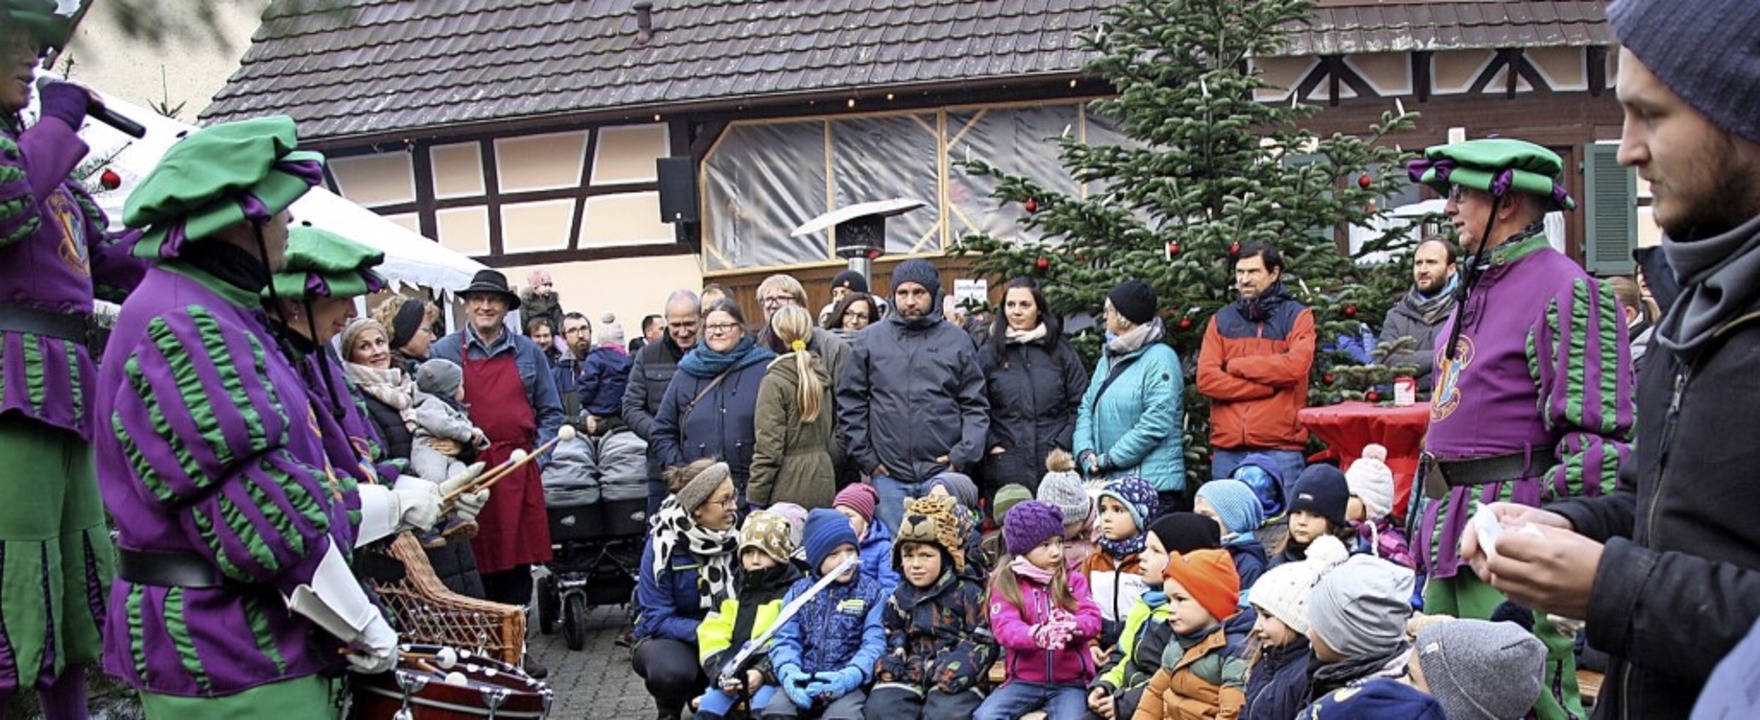 Dicht an dicht standen die Besucher be...ung des Weisweiler Weihnachtsmarktes.   | Foto: Christiane Franz